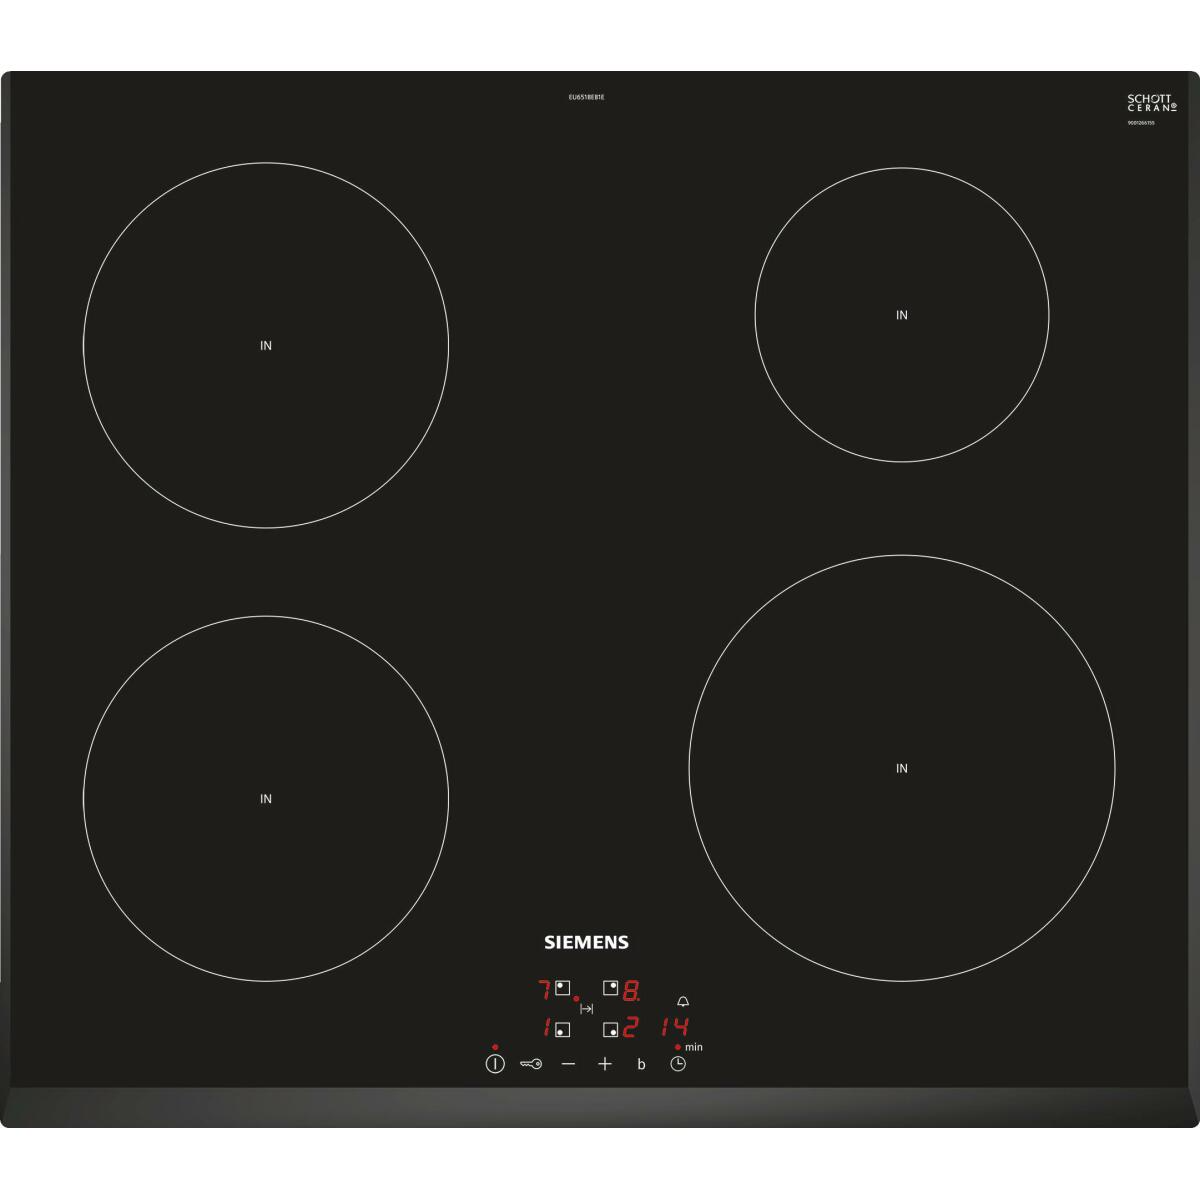 Table de cuisson induction 60cm 4 feux 4600w noir – eu651beb1e – SIEMENS